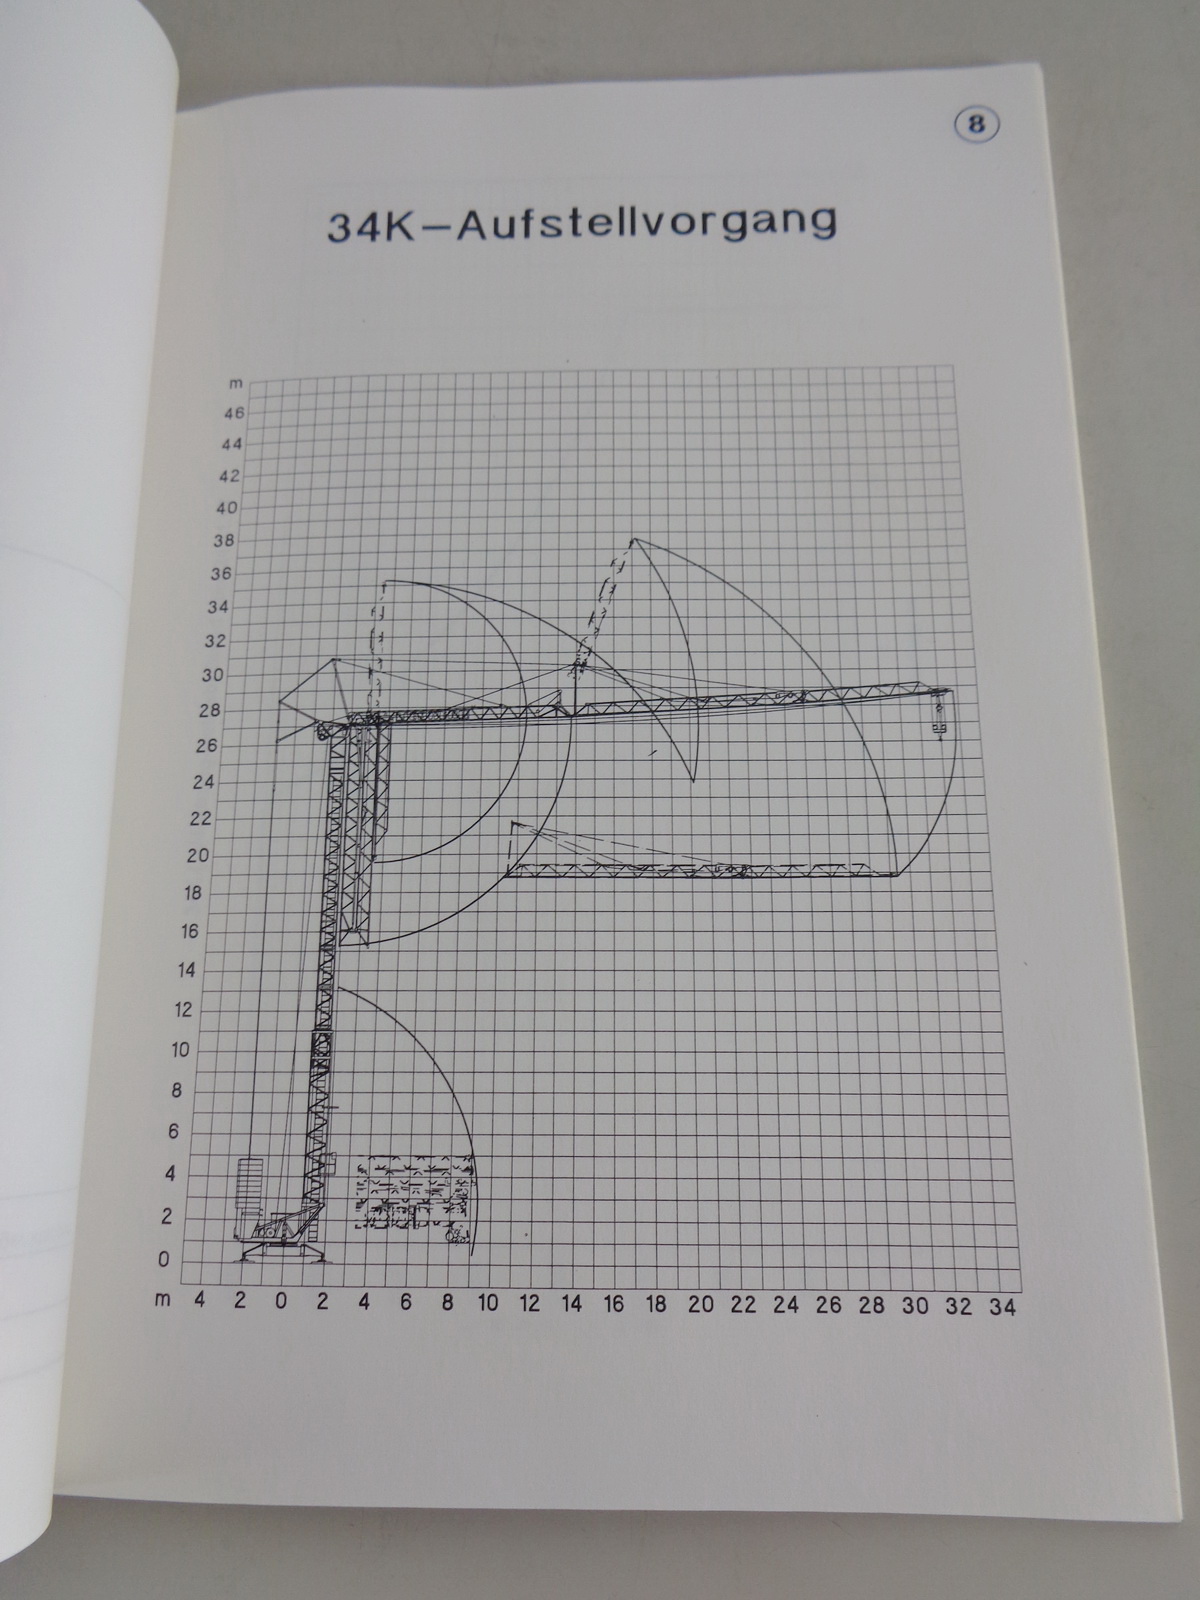 Technische Beschreibung Liebherr Turmdrehkran 56 K von 03/1997 Datenblatt 